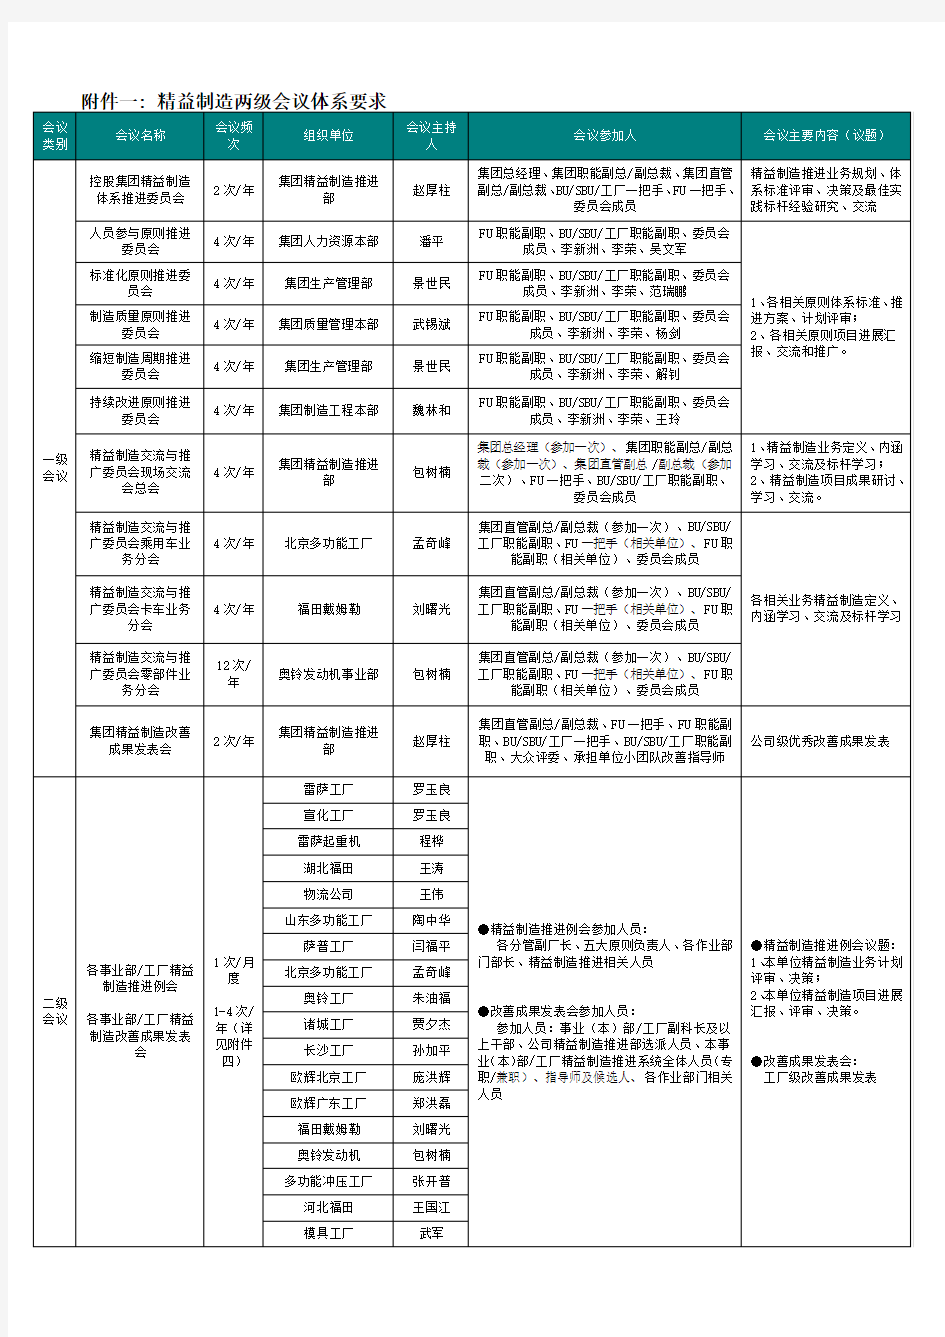 福田汽车精益制造系统2014年下半年会议计划安排